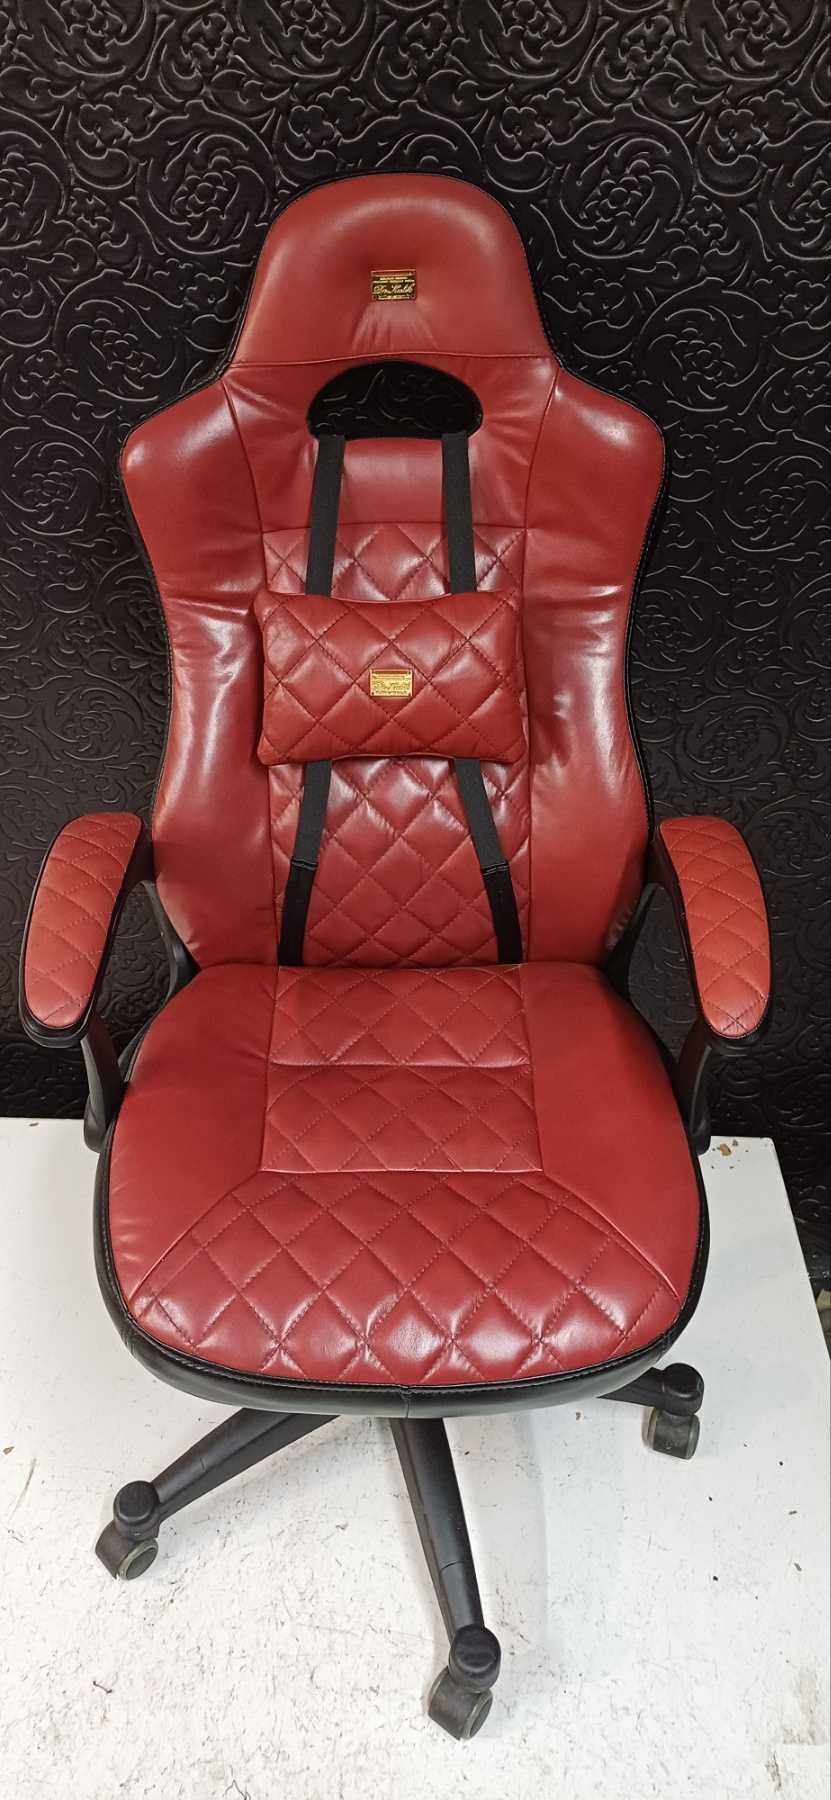 Геймерське/офісне крісло - натуральна шкіра, нова перетяжка